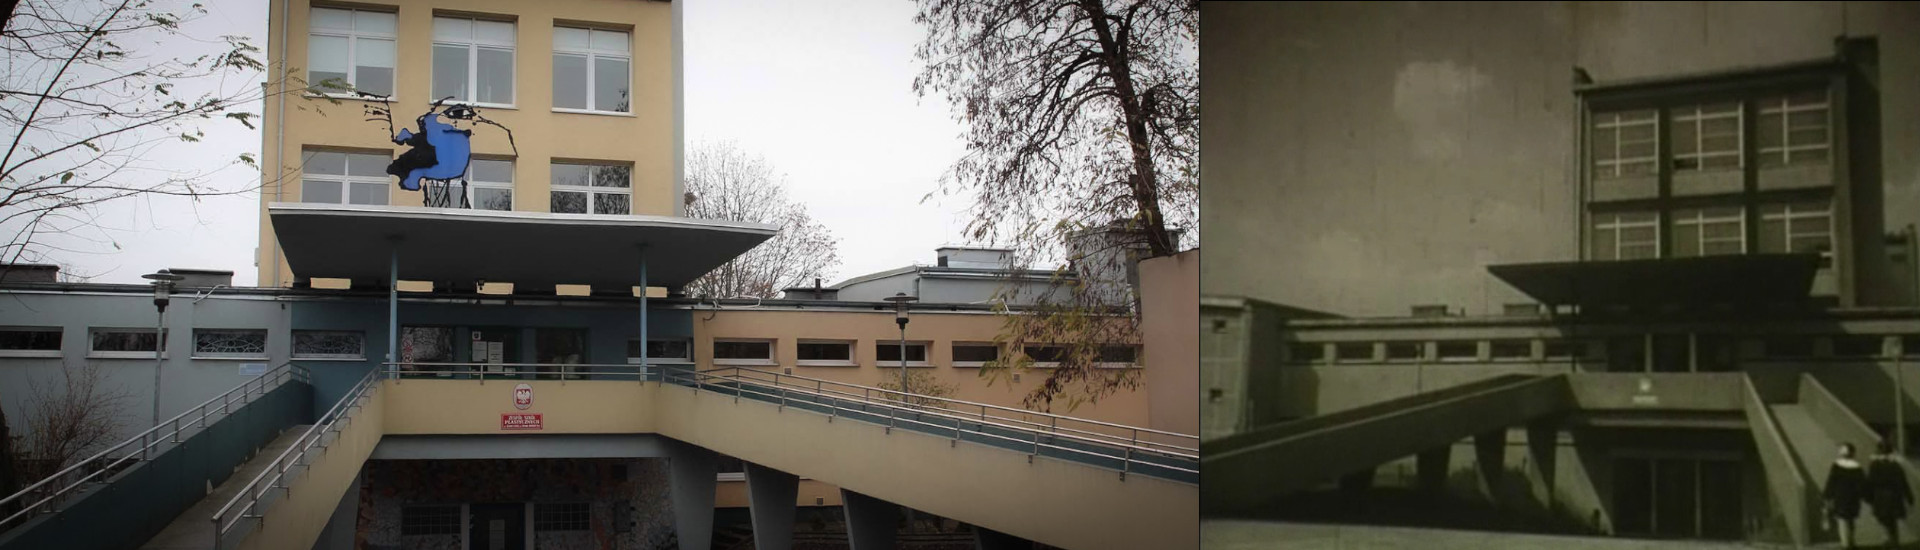 Dwa połączone zdjęcia pokazujące podjazdy do szkoły. Zdjęcie po lewej stronie pokazuje aktualny budynek szkoły, zdjęcie po prawej stronie pokazuje archiwalne zdjęcie z lat sześćdziesiątych.